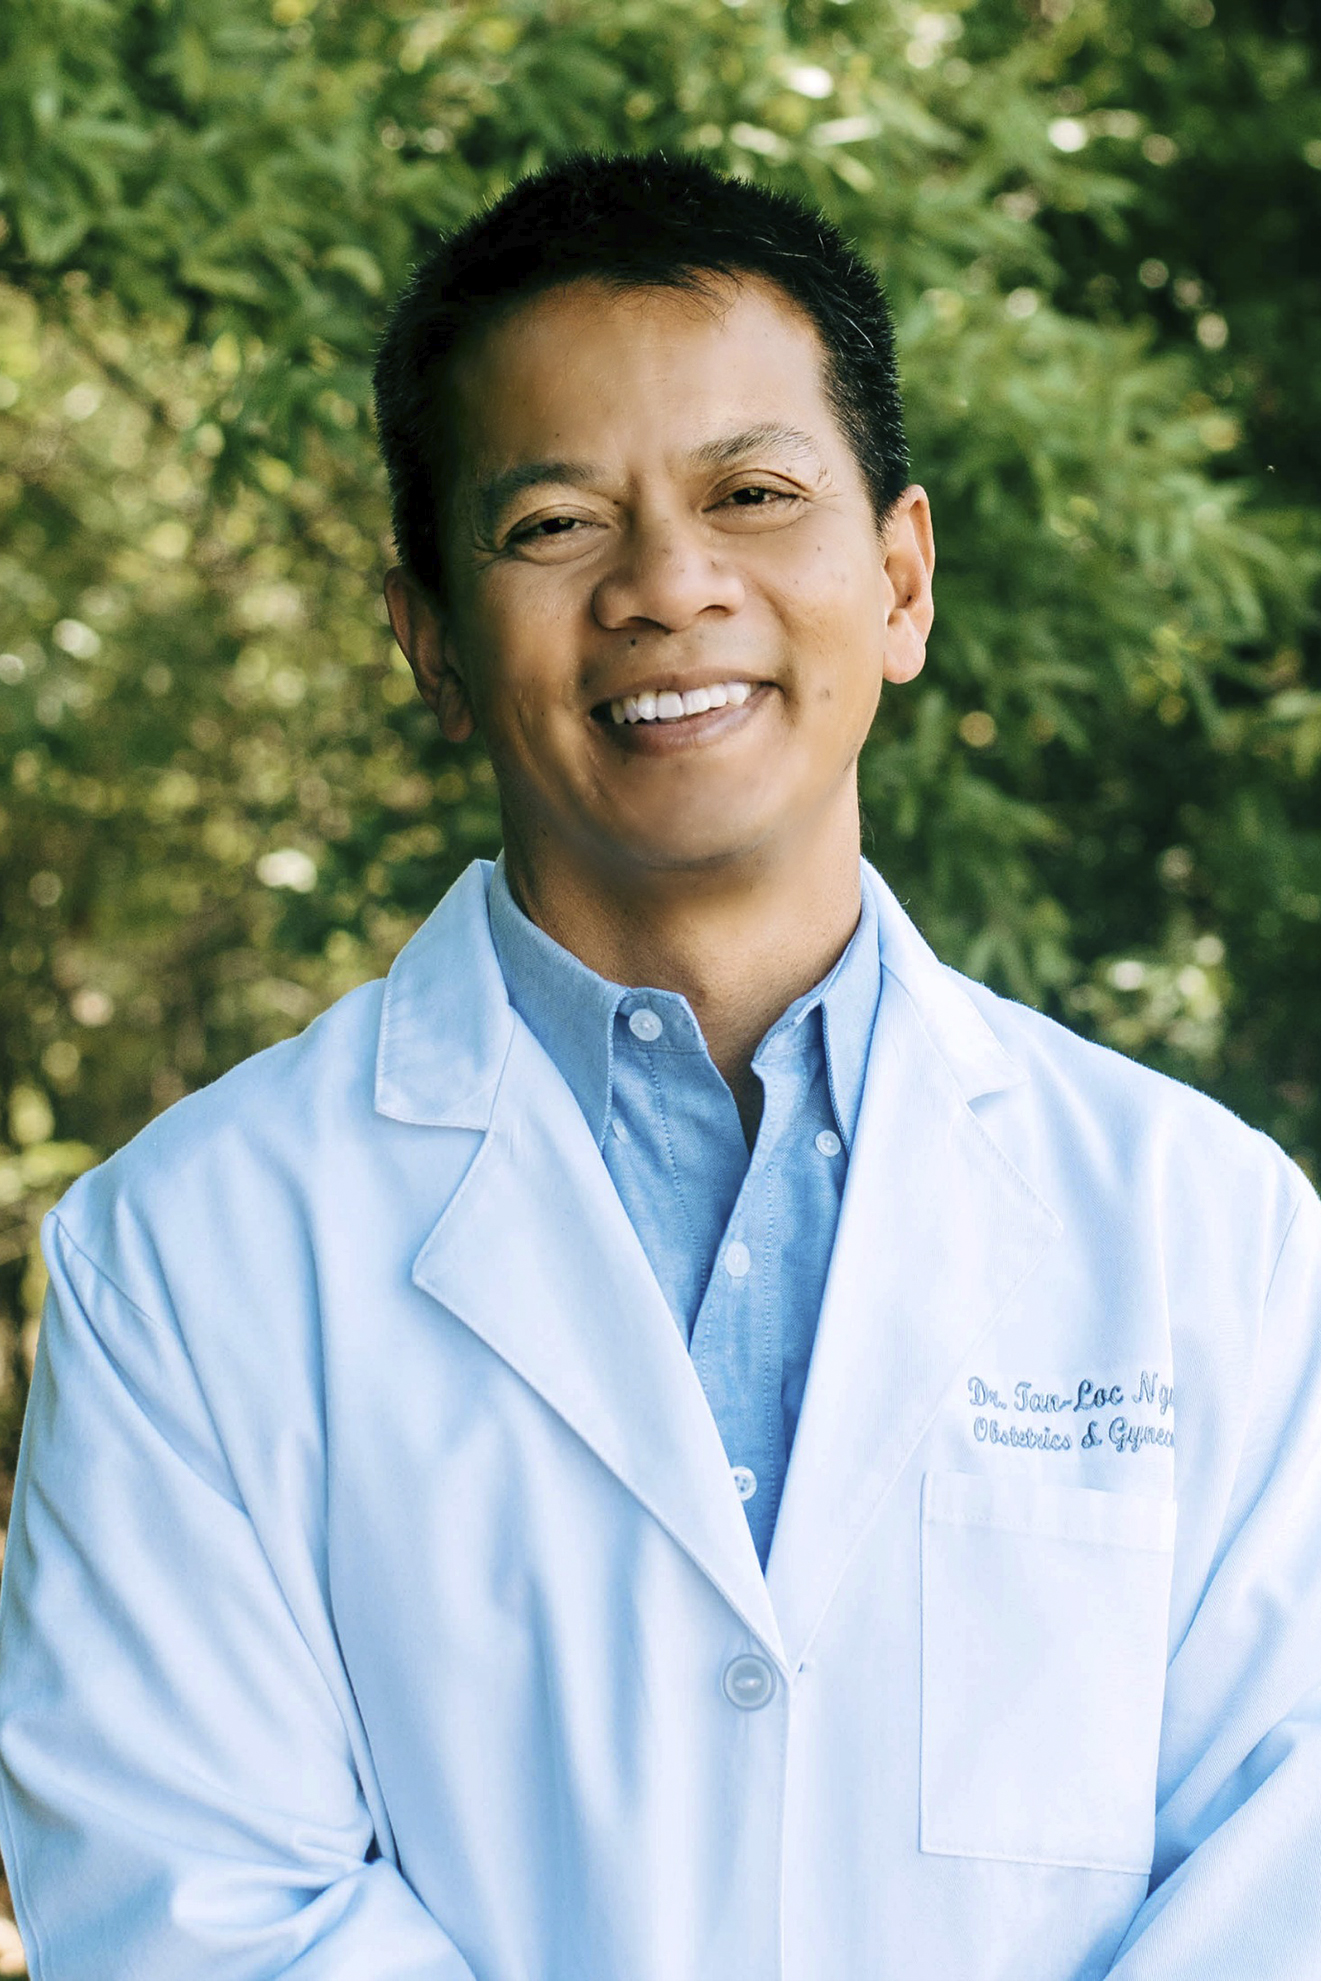 Tan-Loc Nguyen, MD